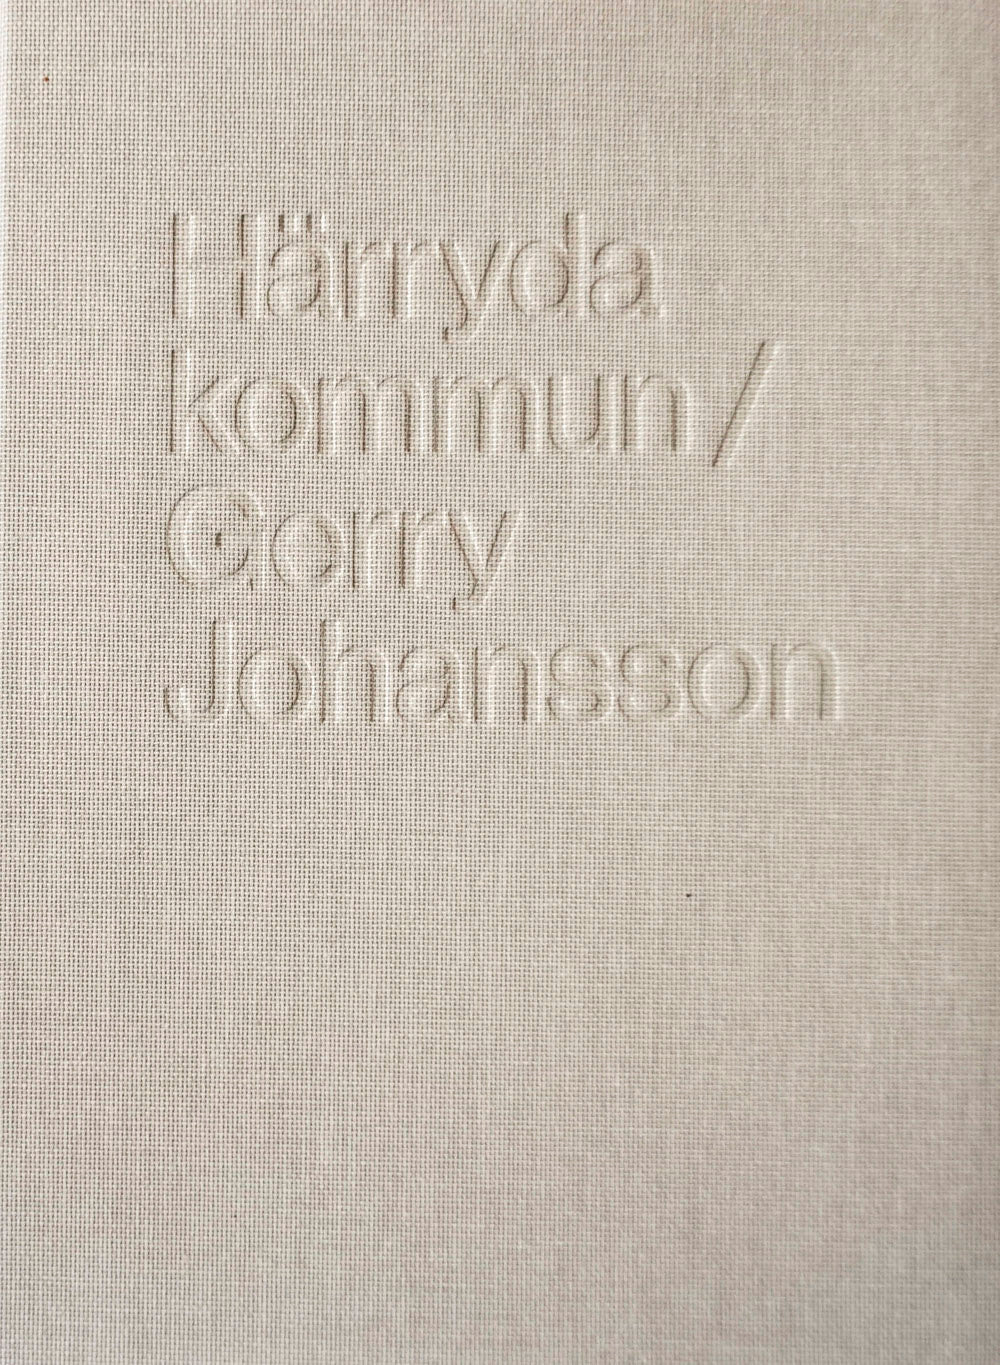 Härryda Kommun – signed